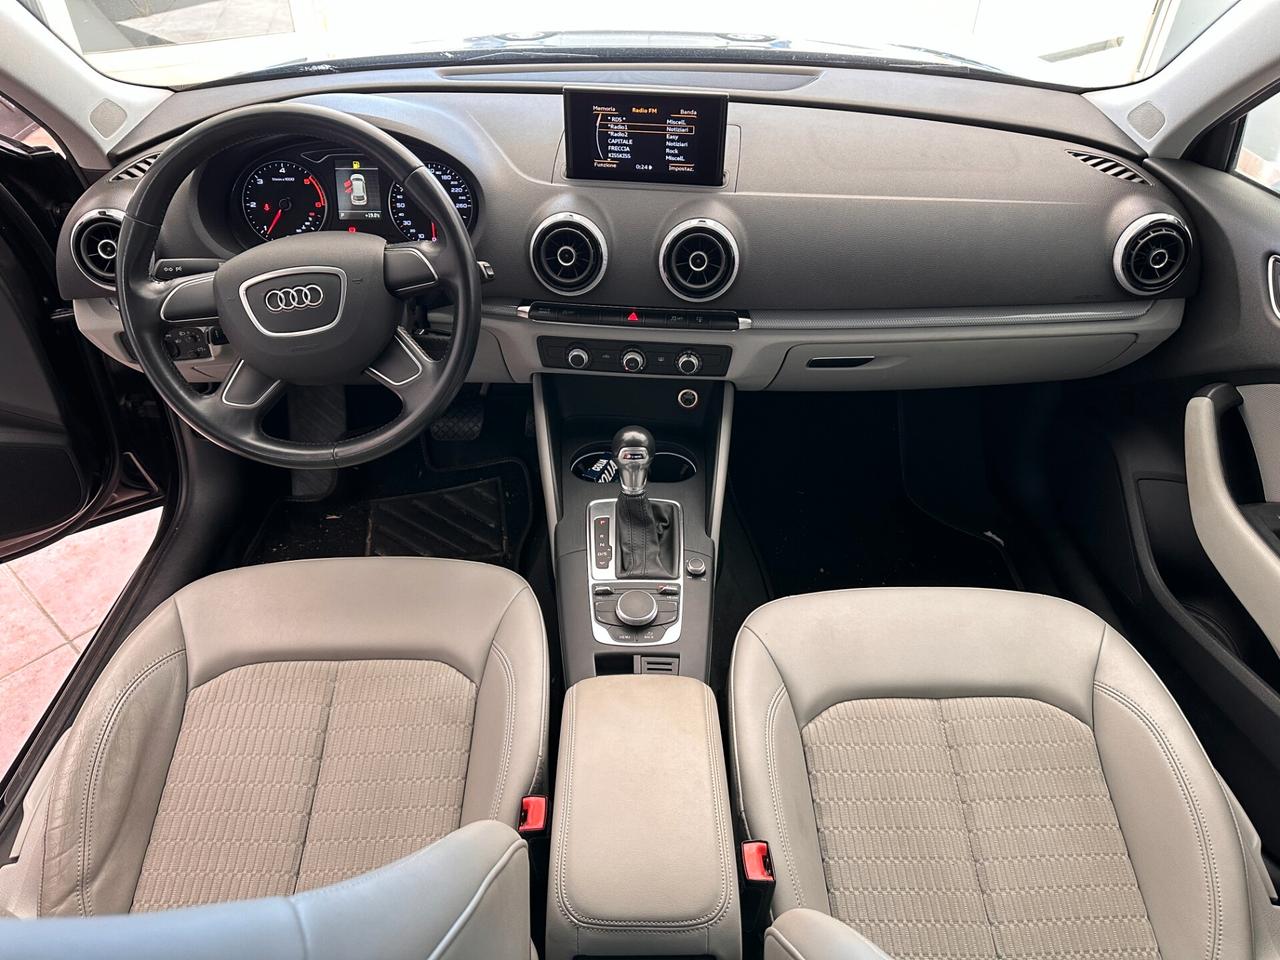 PERMUTA Audi A3 SPB 2.0 TDI 150 CV s tronic